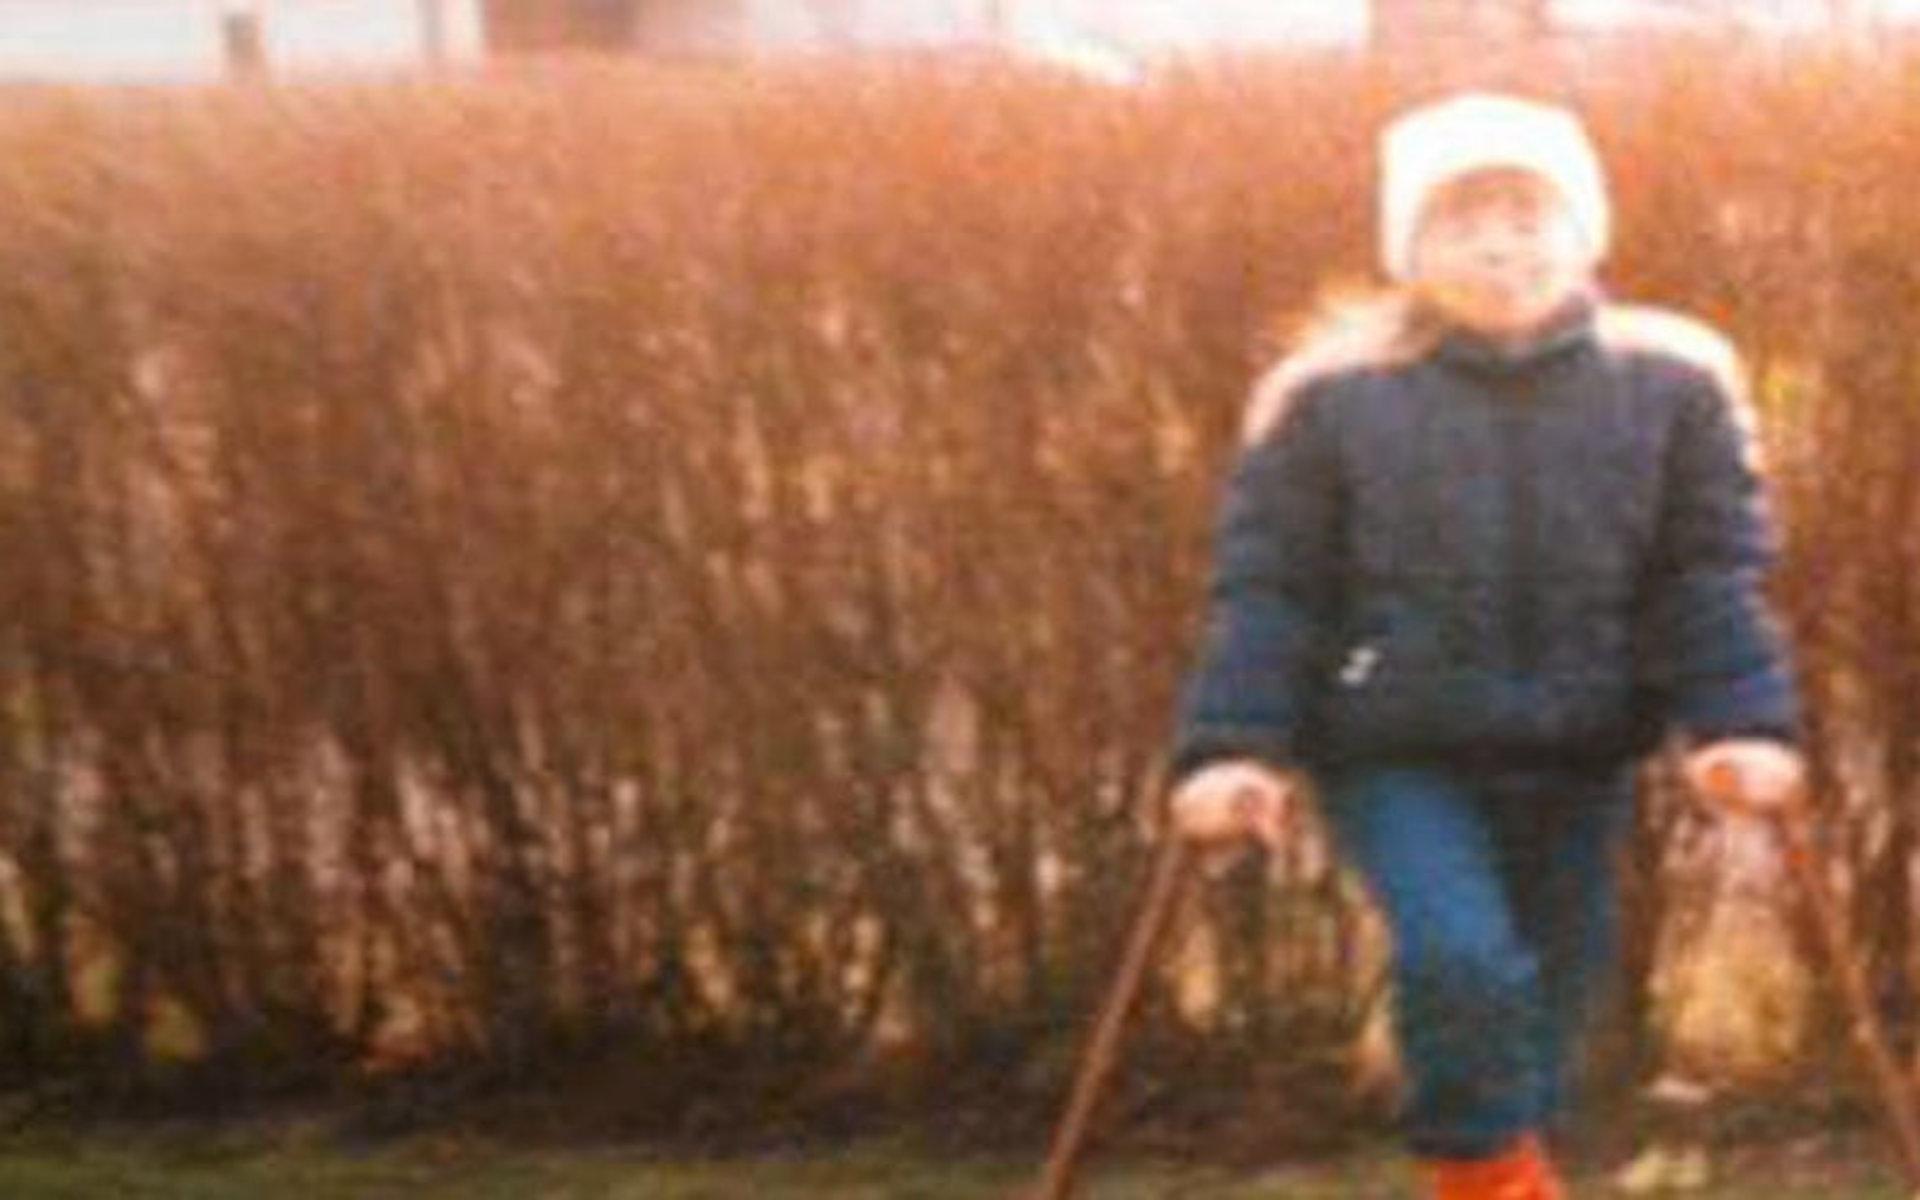 Malin Kjellberg, 10 år, med sina bruna kryckor efter att ha fått oförklarligt ont i höften.